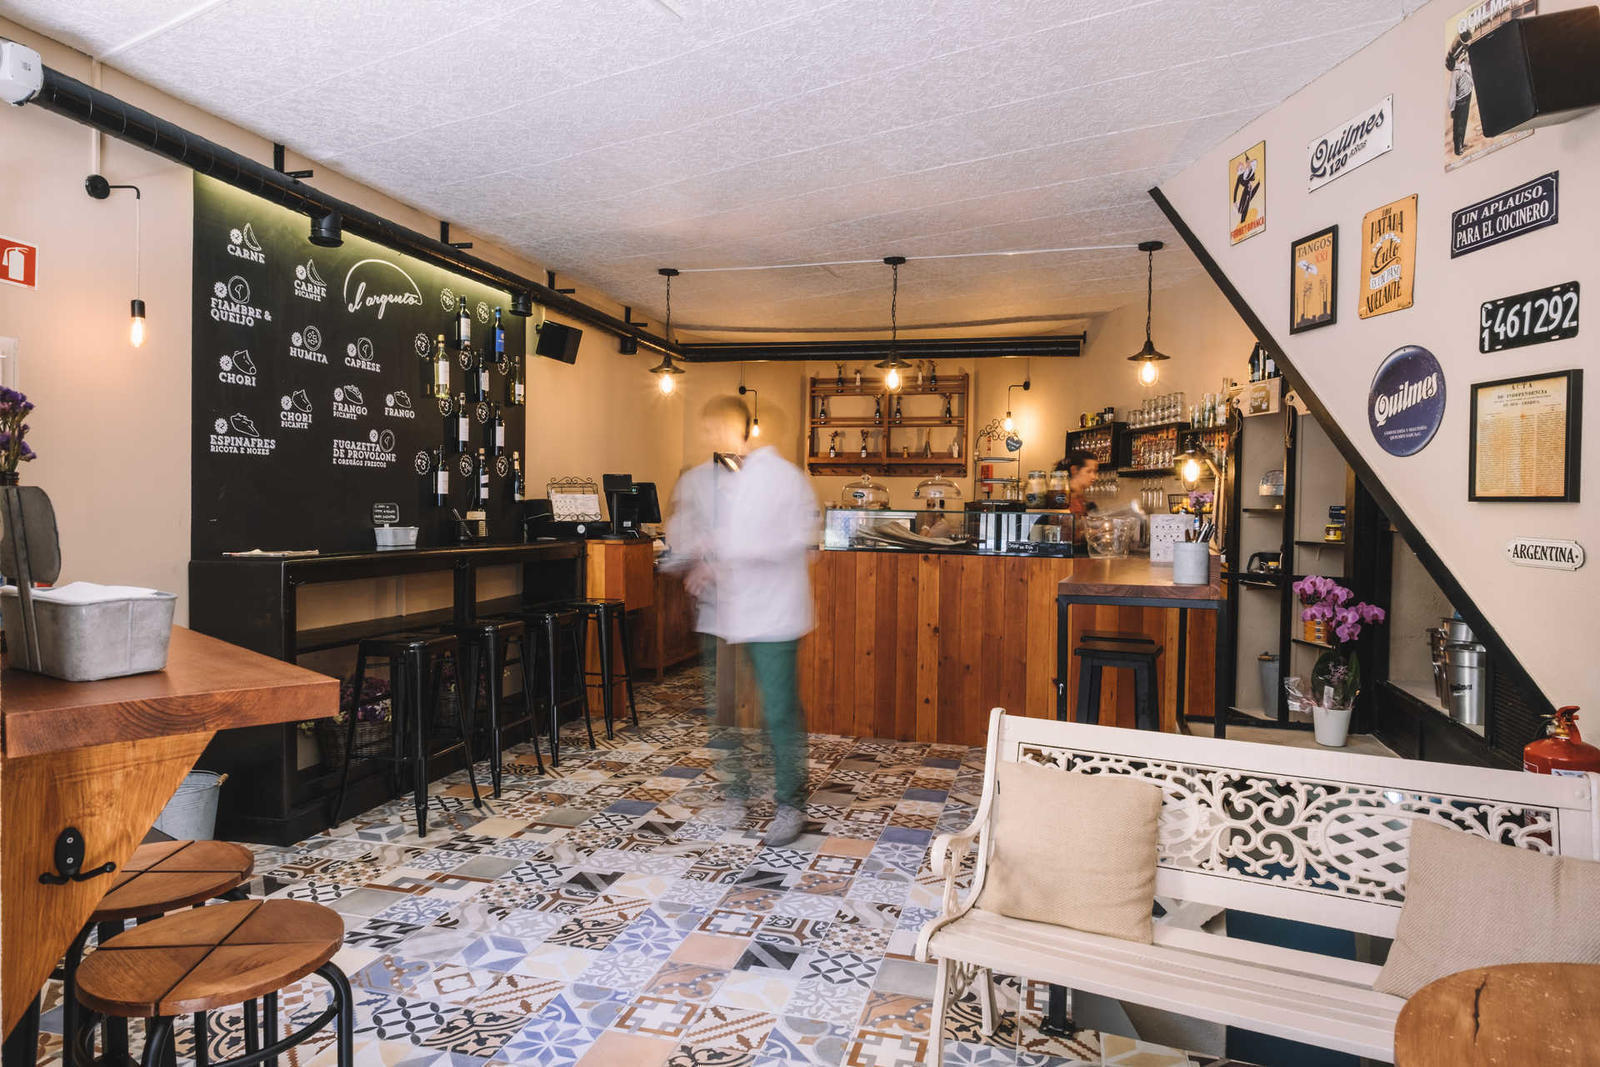 Restaurante El Argento, abriu portas na cidade do Porto.